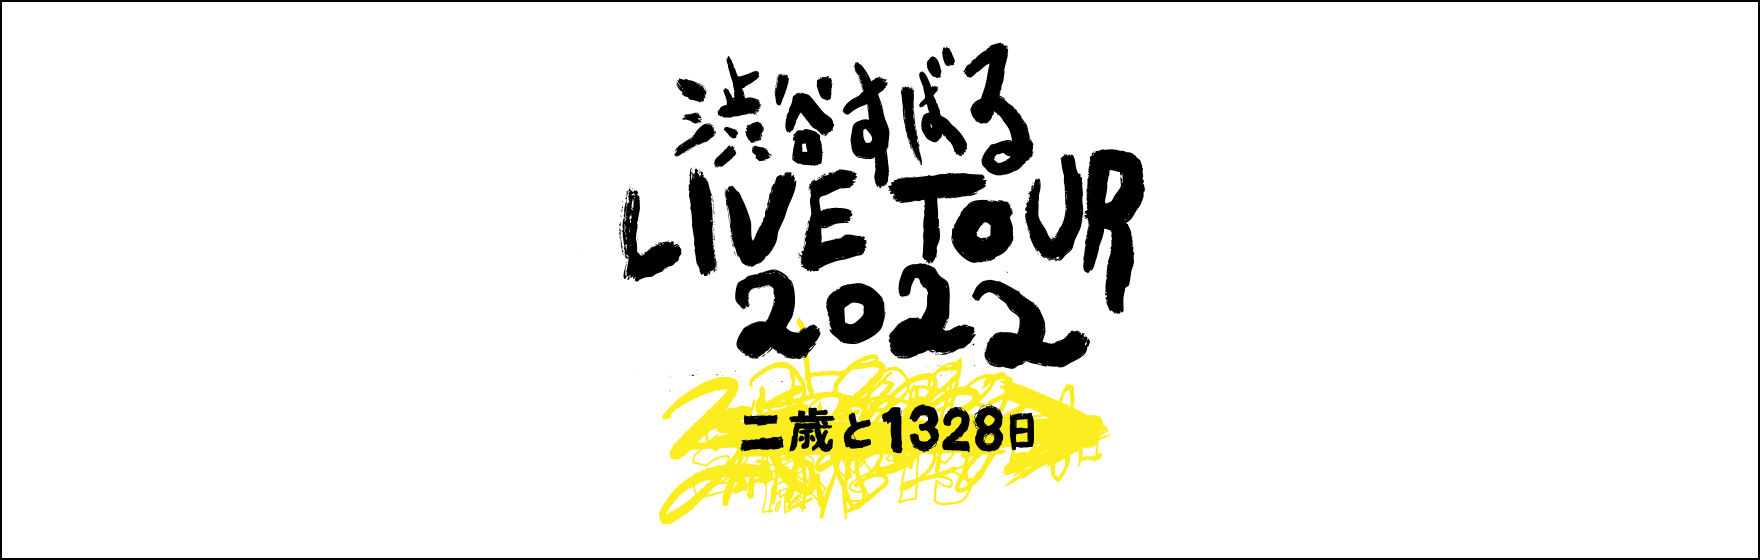 「渋谷すばる LIVE TOUR 2022 二歳と1328日」